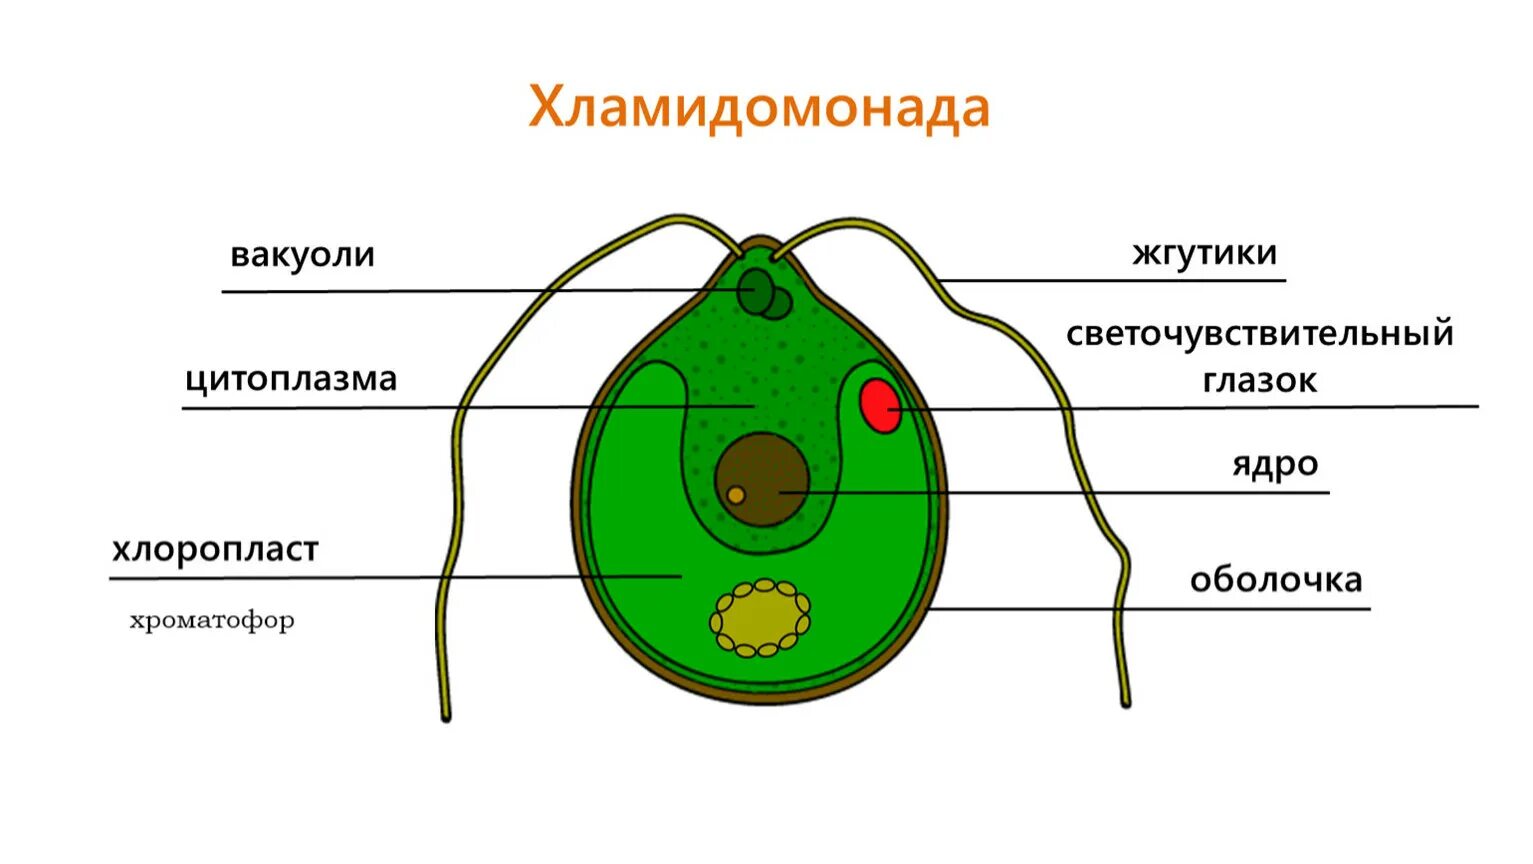 Органеллы водоросли. Строение одноклеточных зелёных возрослей. Строение клетки вордорослоя. Строение клетки Chlamydomonas. Схема строения клетки хламидомонады.